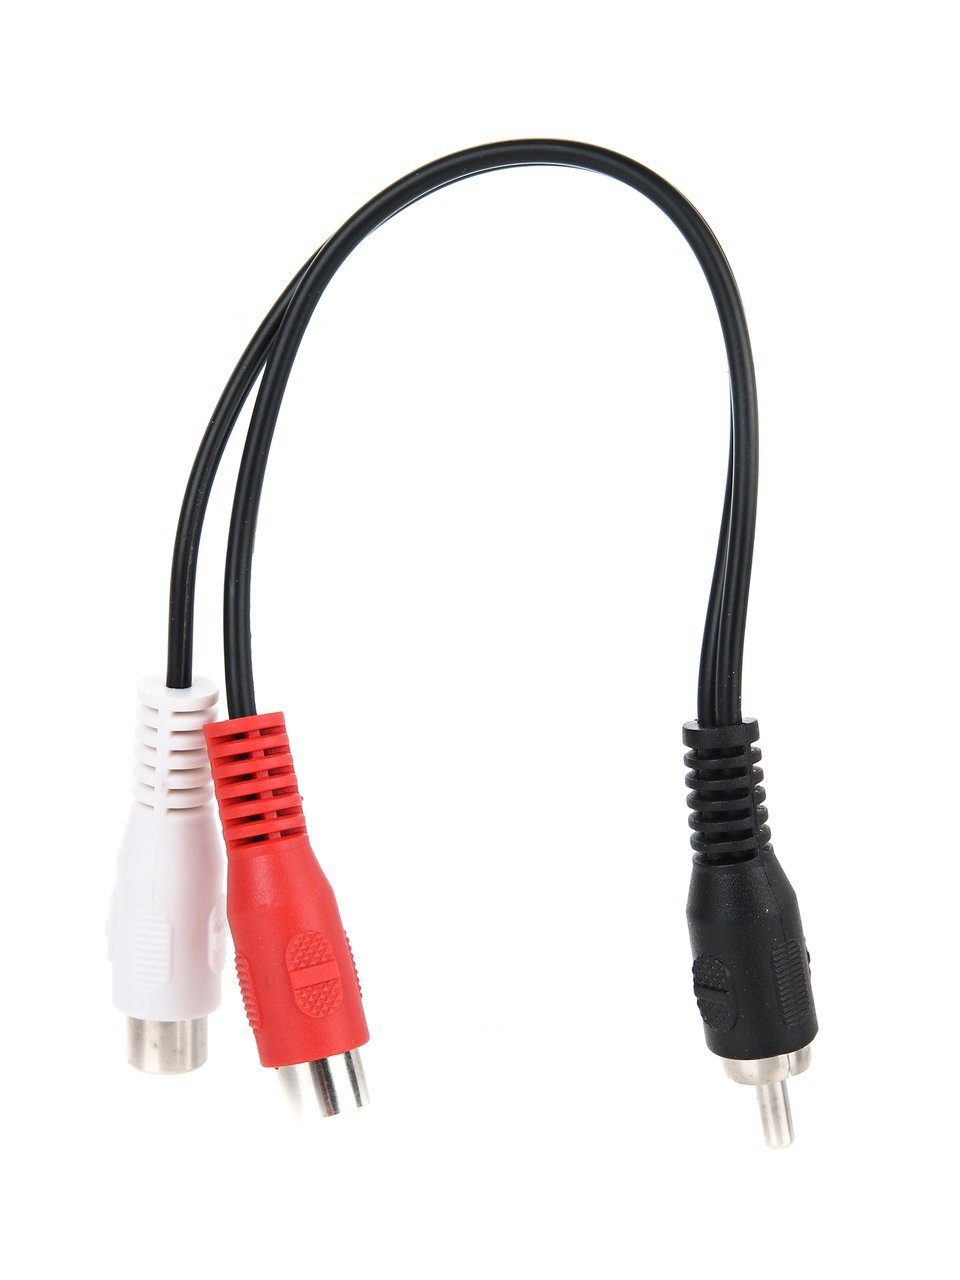 Кабель Telecom Audio 1RCA - 2RCA M-F 0.2м TAV4954-0.2M 16 жильный аудио кабель кабель для наушников улучшенный кабель для аудио дана кларка колонок mr ether alpha dog prime